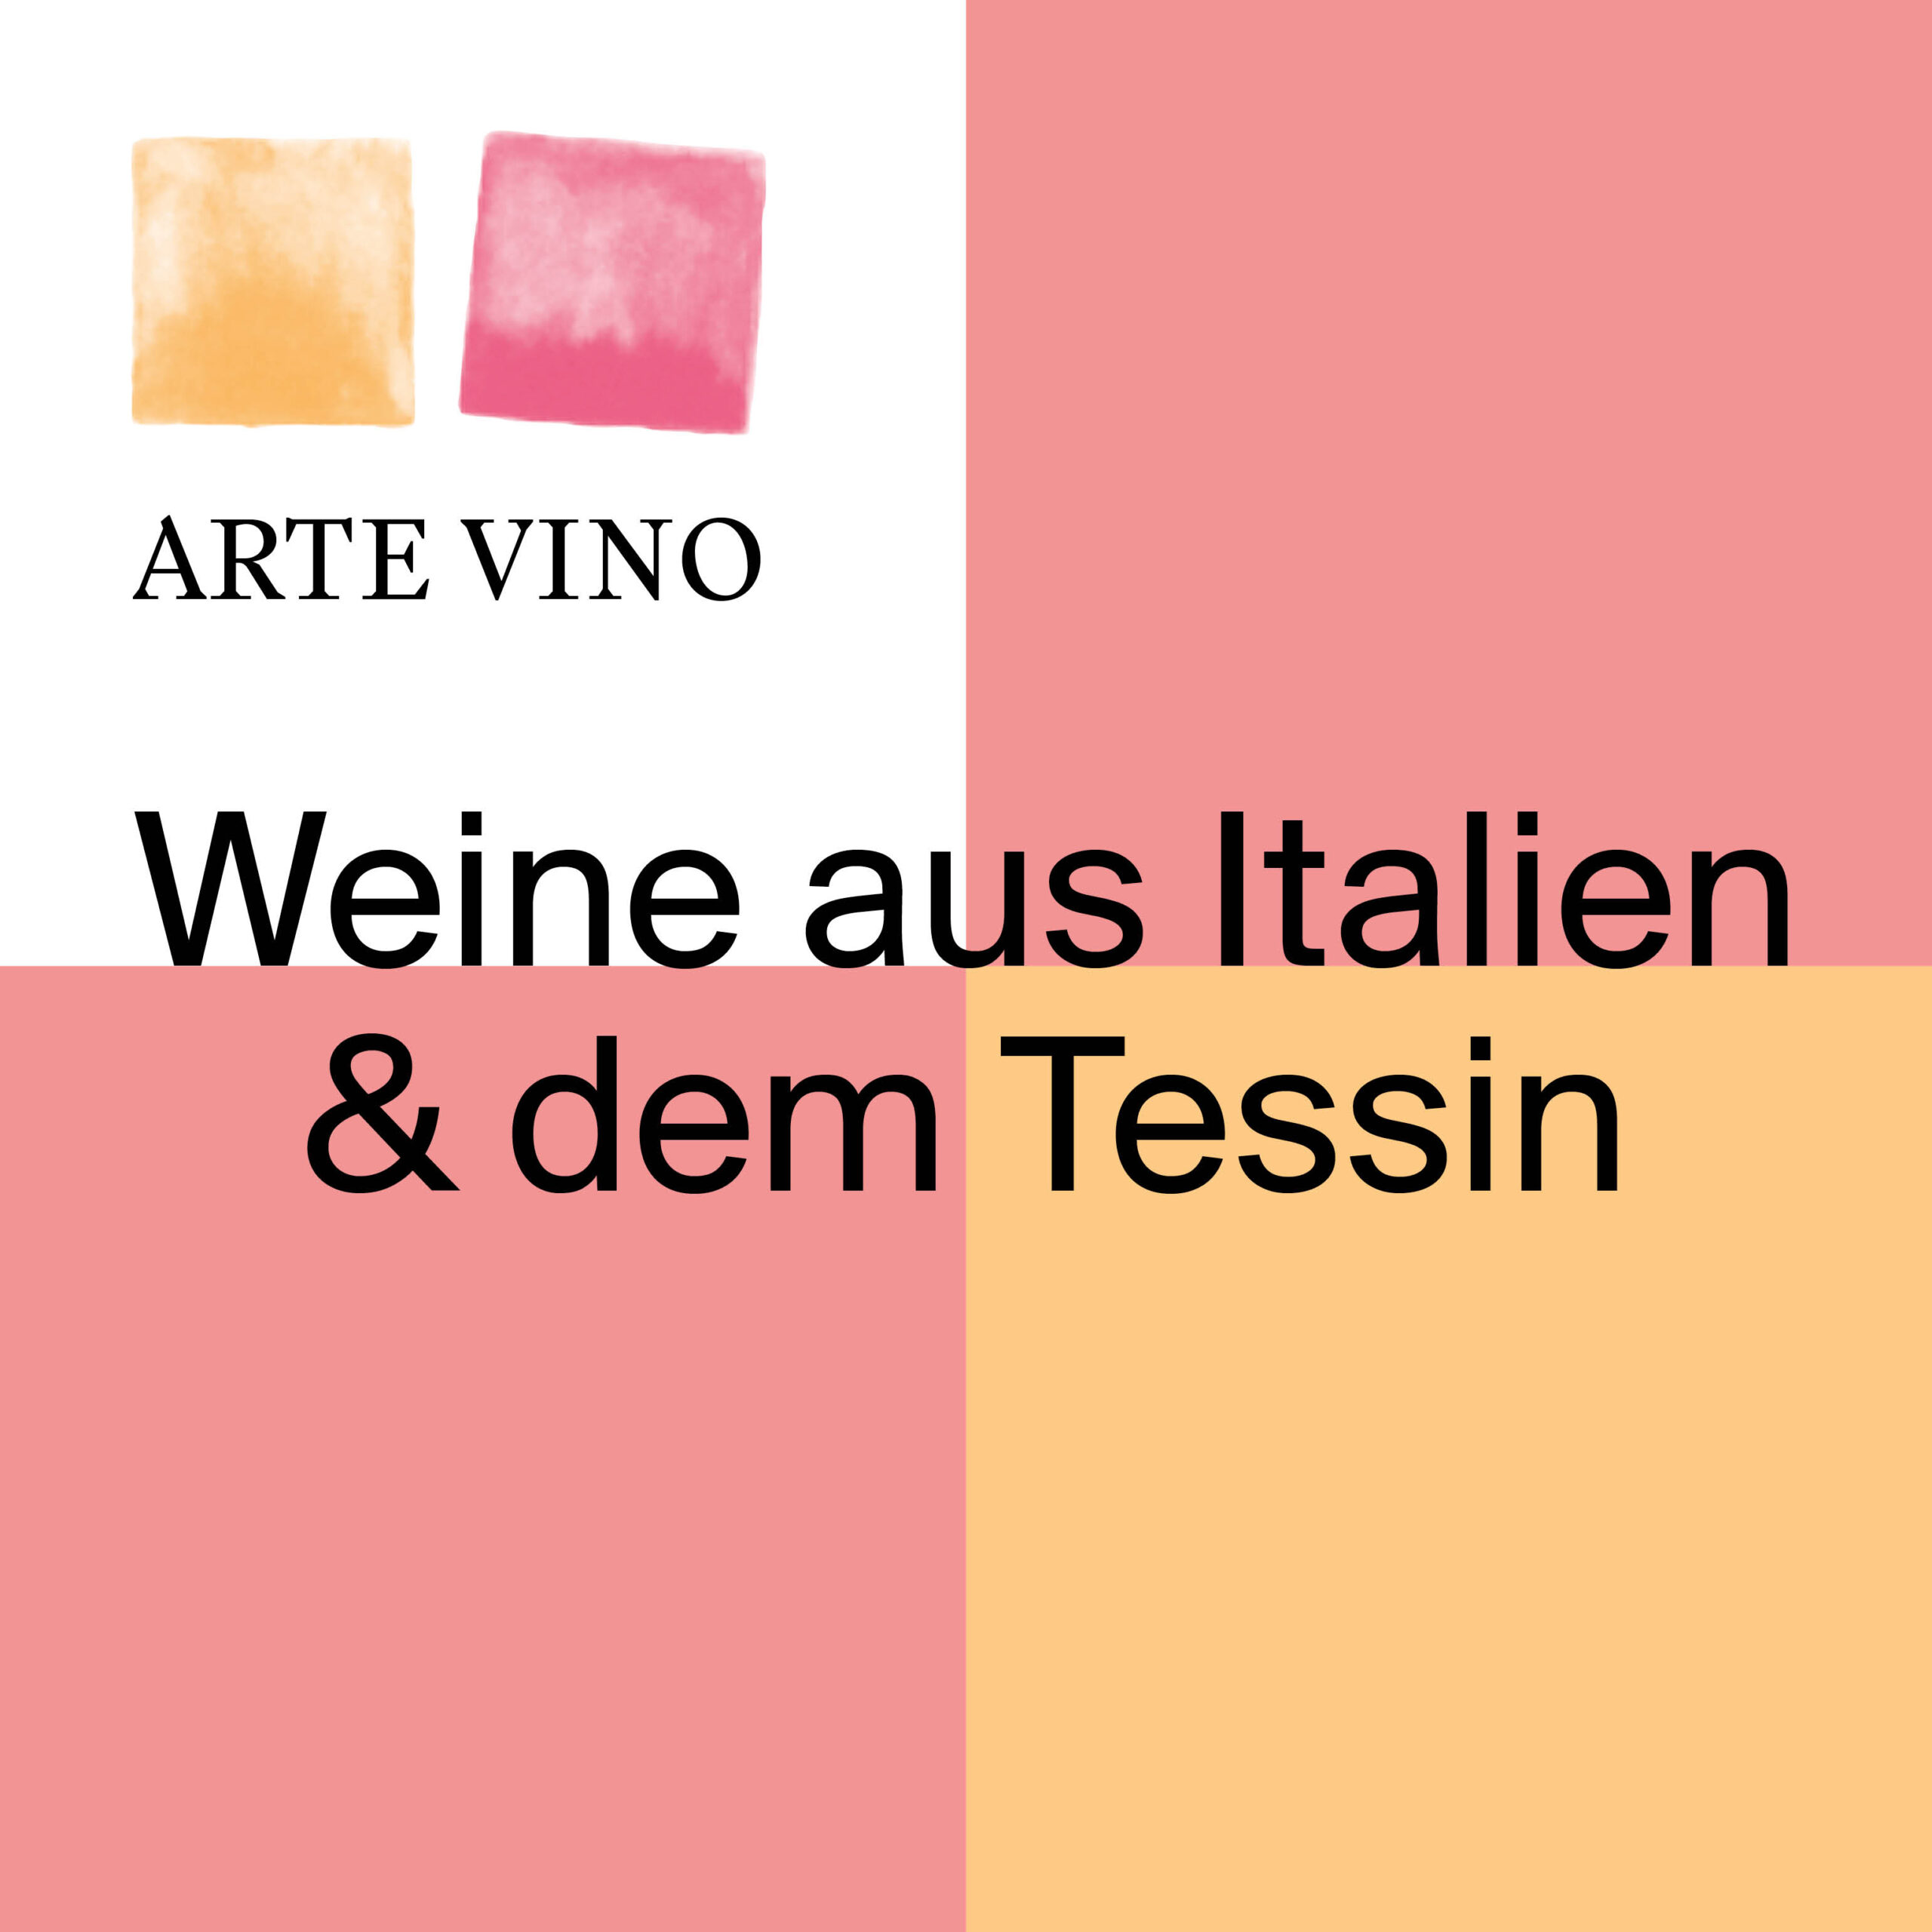 Captns Konzept und Gestaltung Redesign Weinhandlung Arte Vino: Startbild